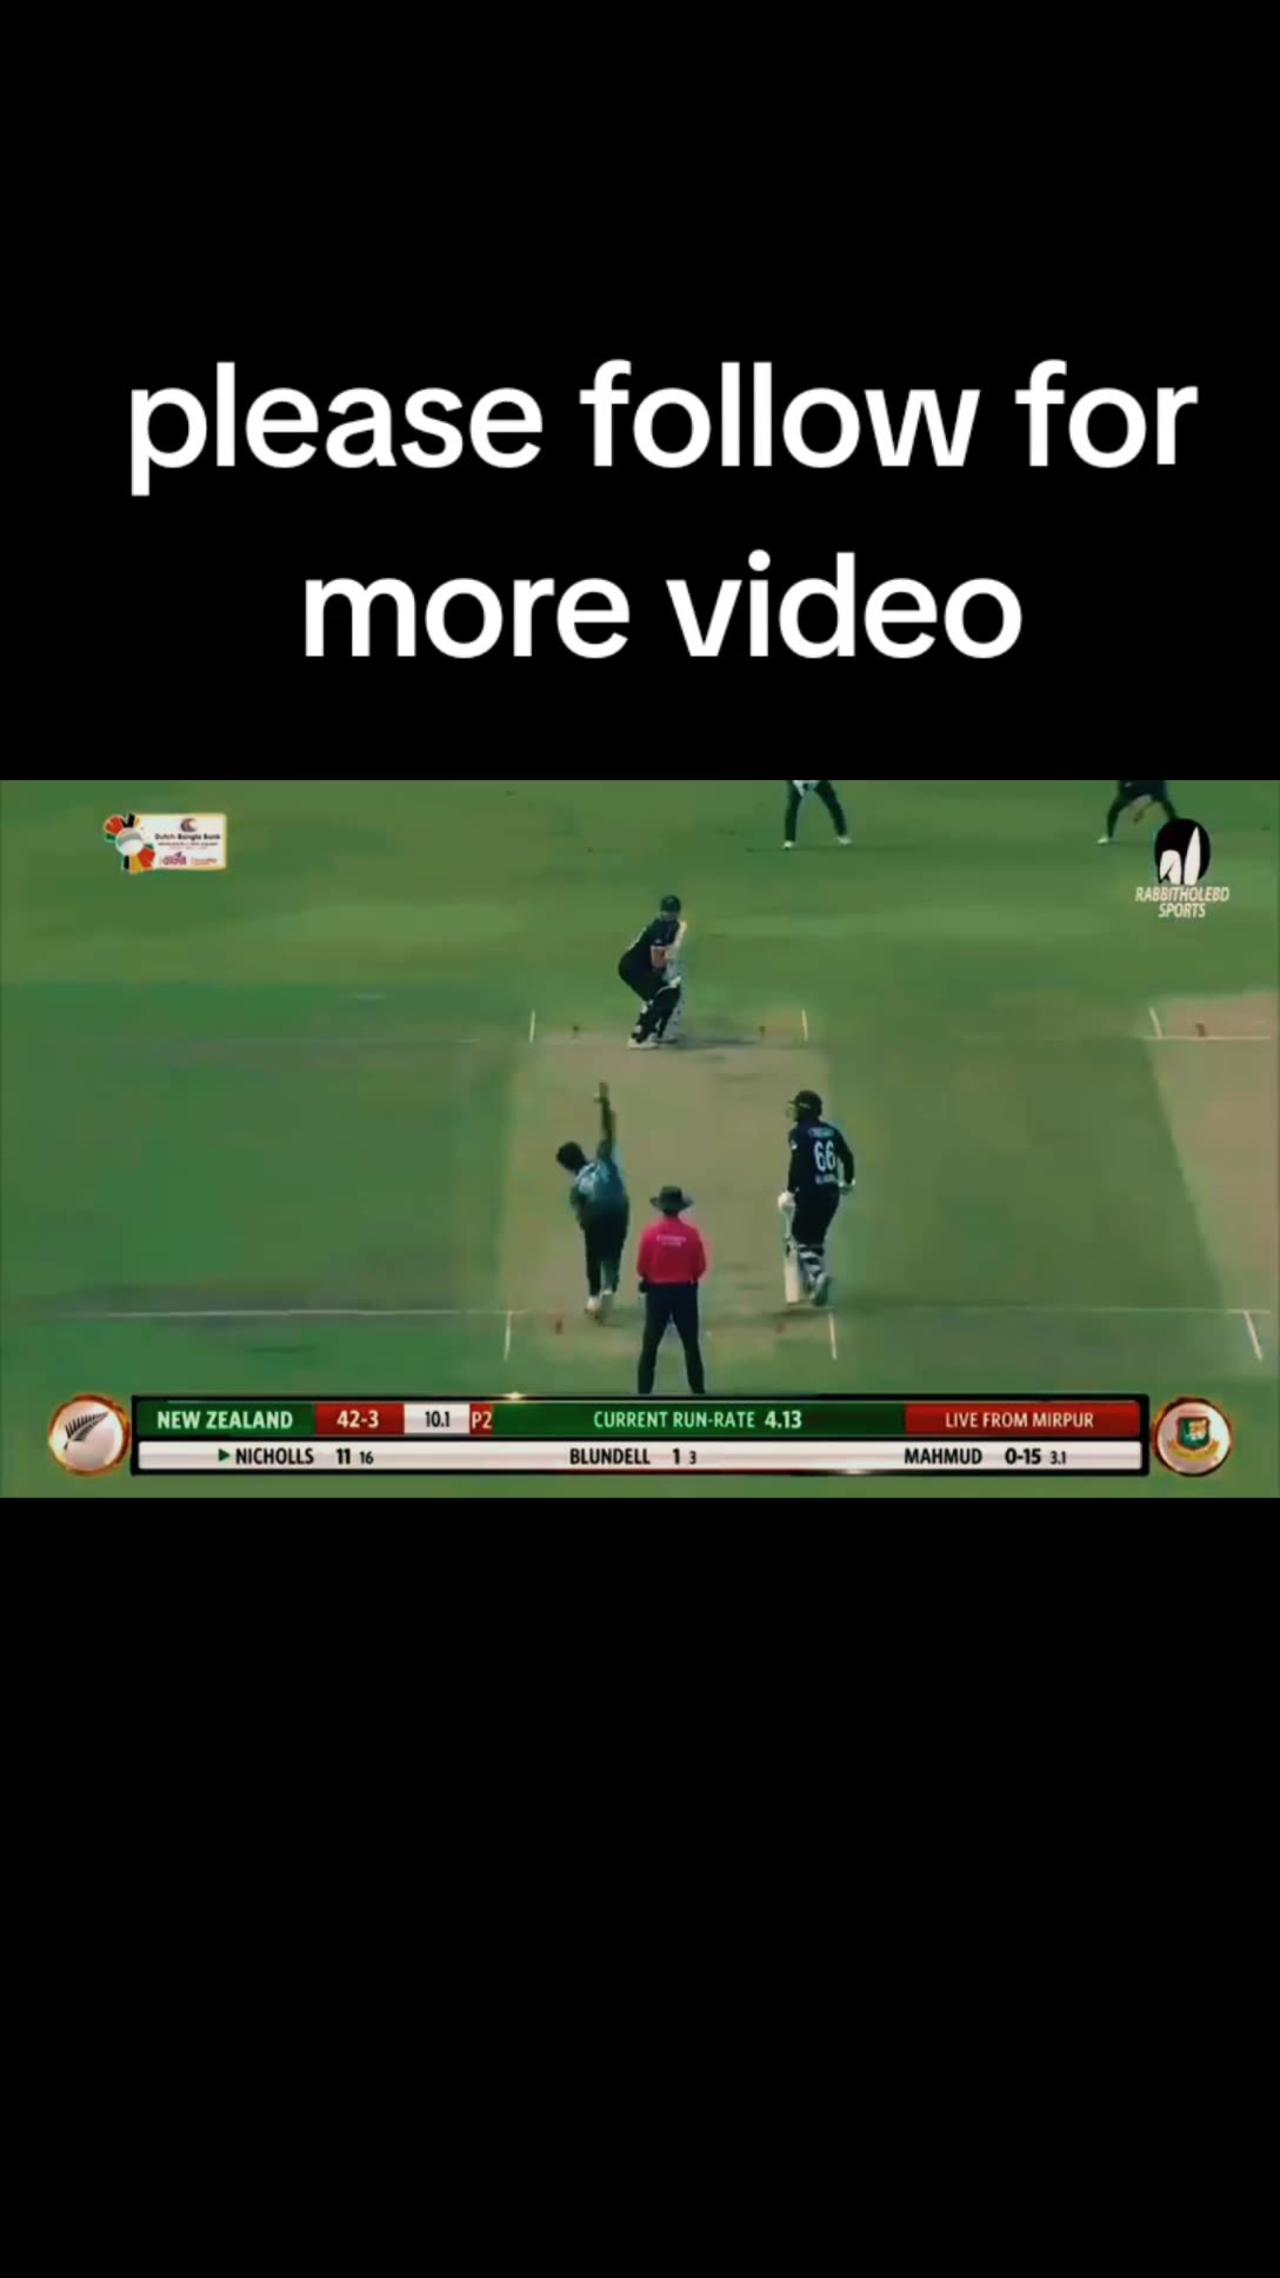 Bangladesh vs new Zealand ODI match